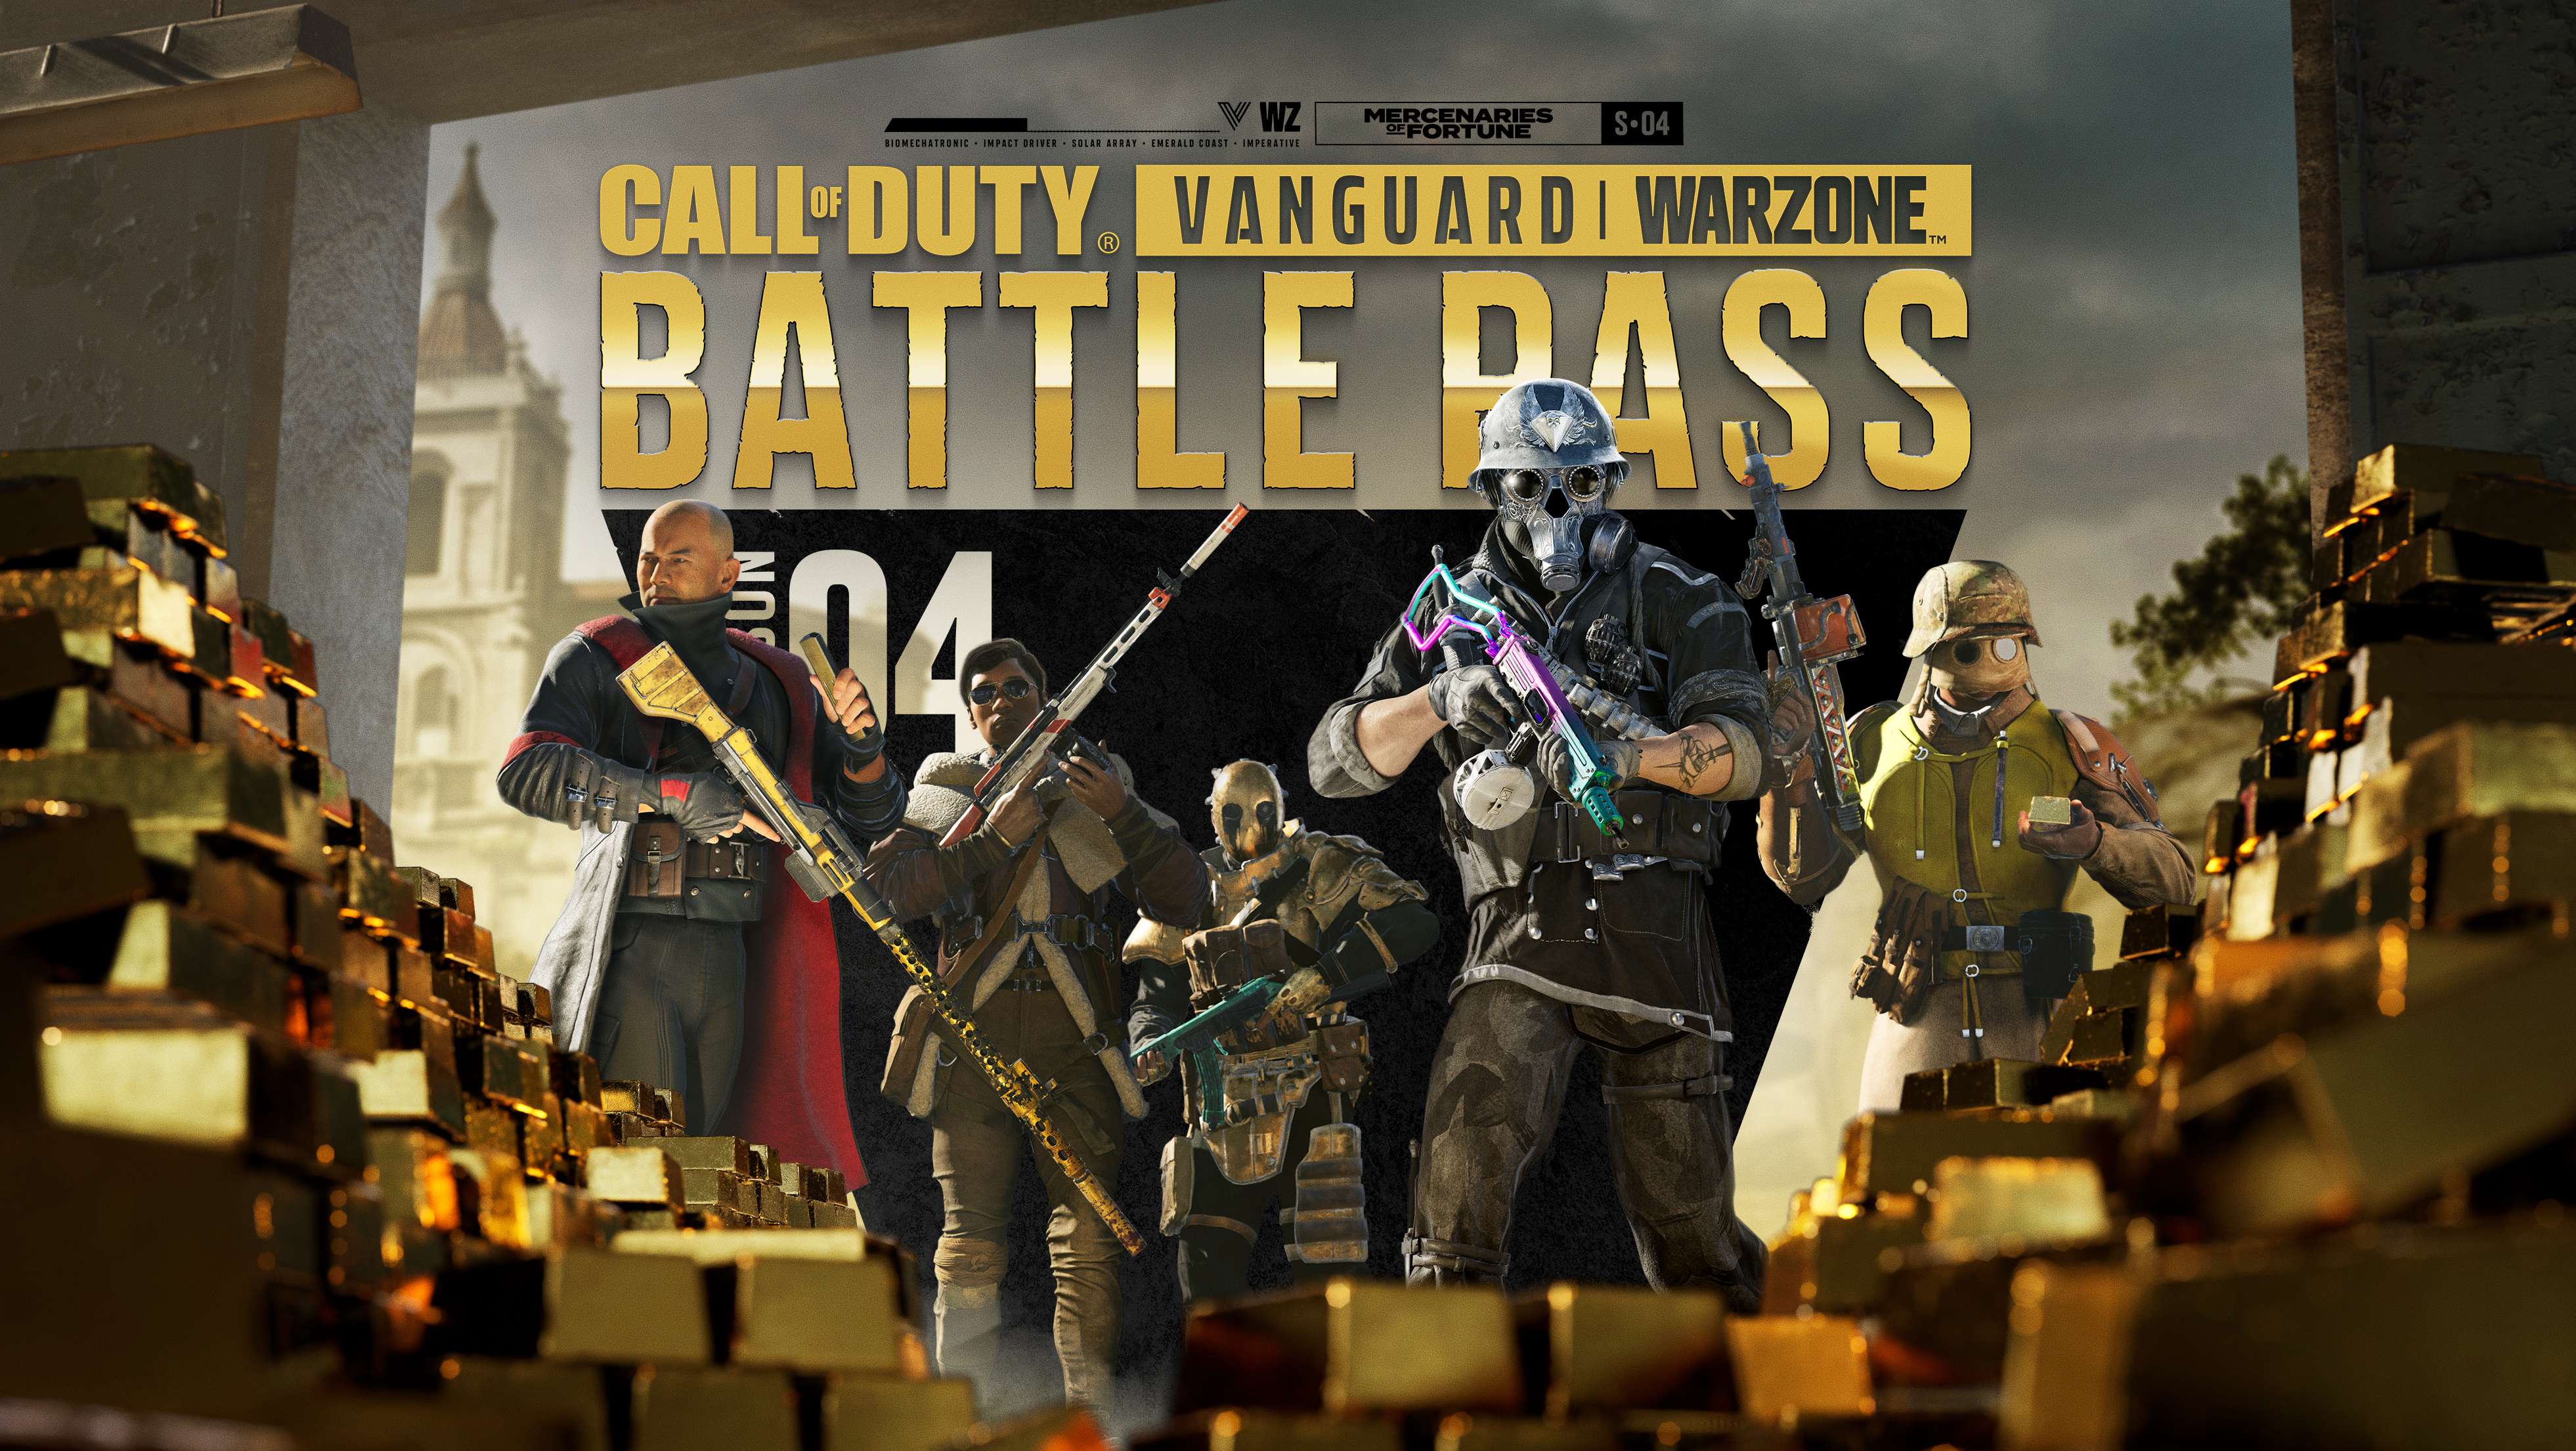 Image of Battle Pass Key Art